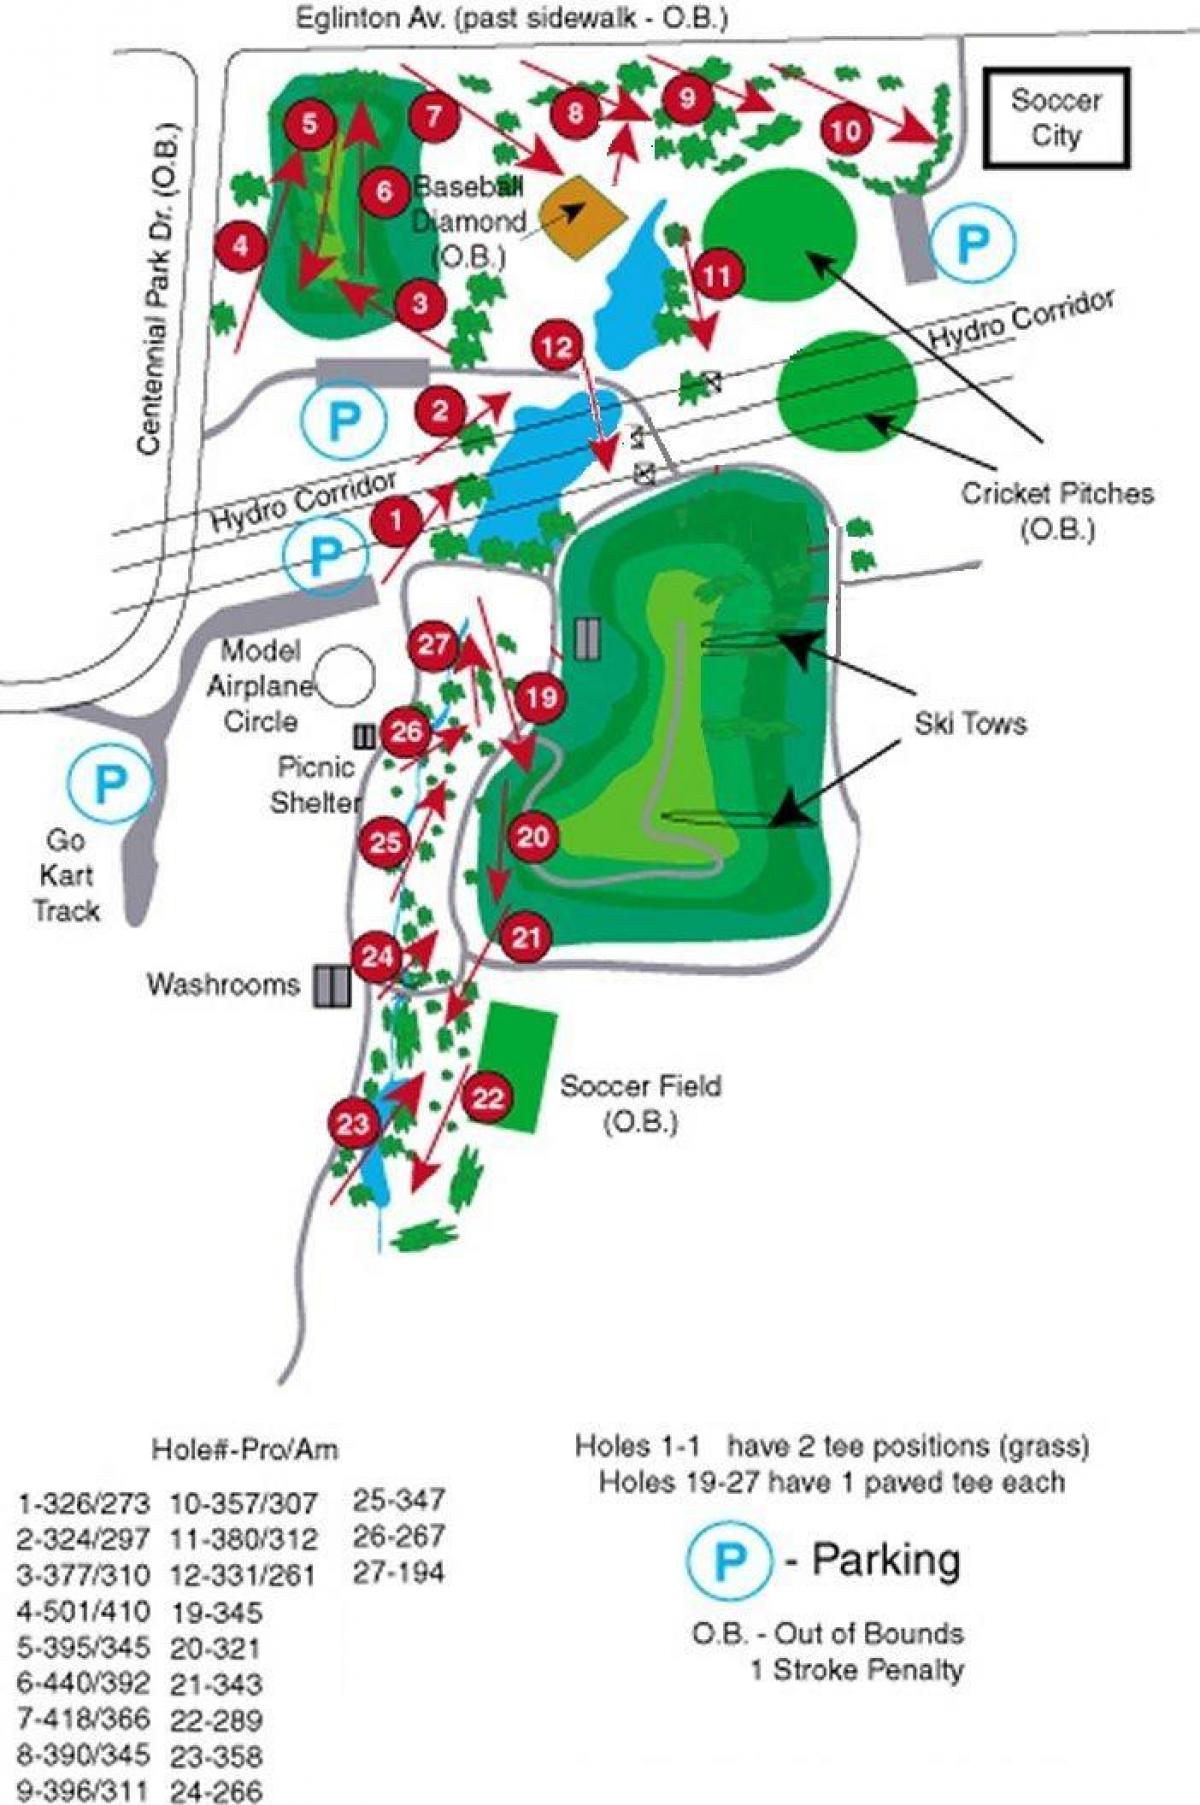 નકશો શતાબ્દી પાર્ક ગોલ્ફ કોર્સ ટોરોન્ટો